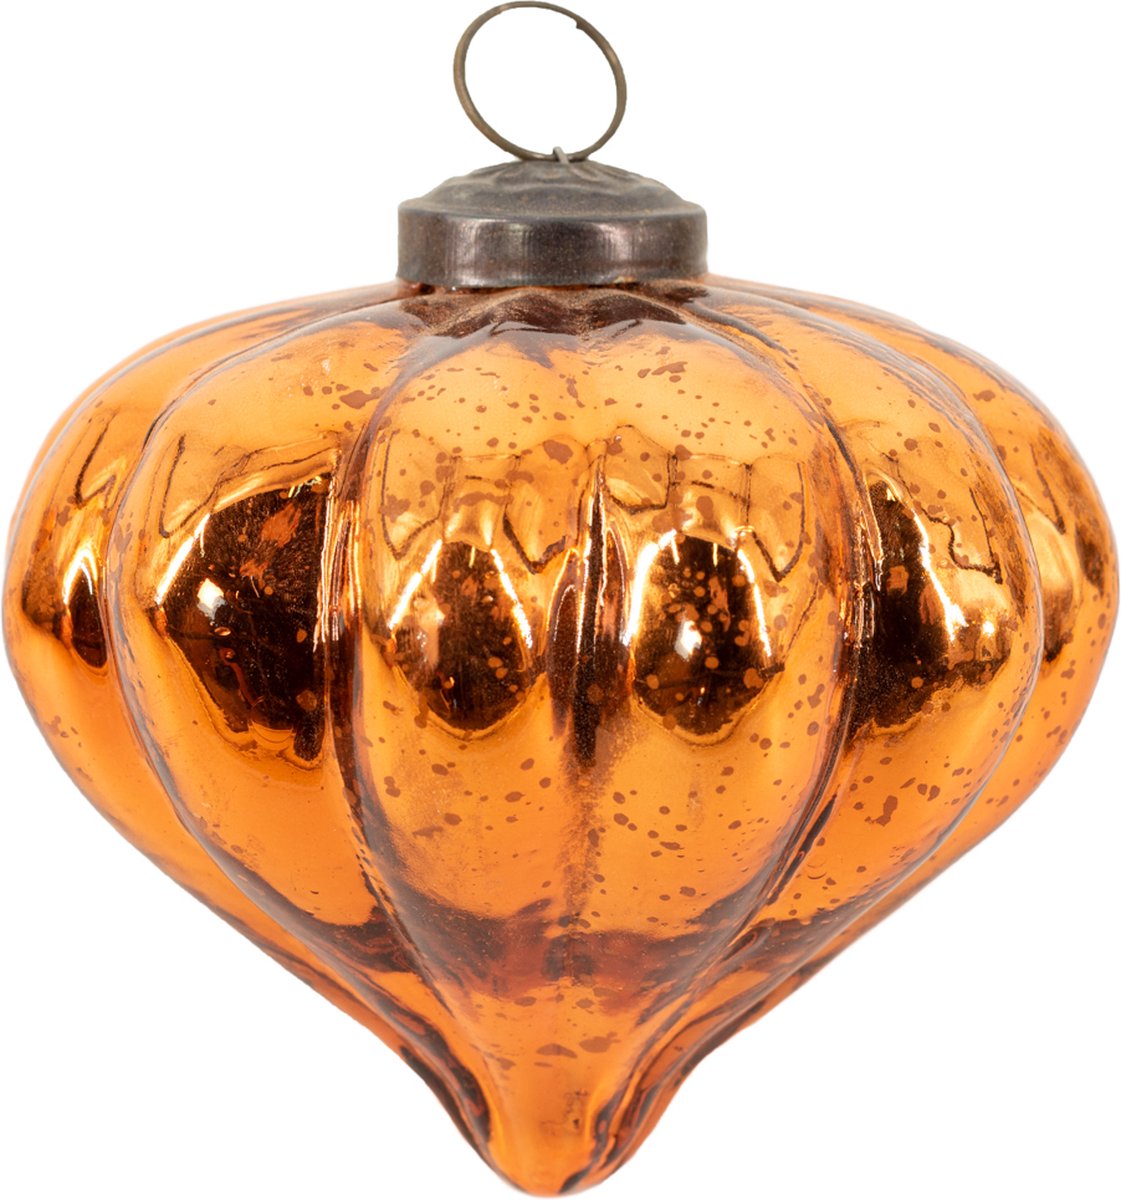 Glazen kerstbal copper - kerstornament - kerstversiering roestkleurig - glazen kerstdecoratie